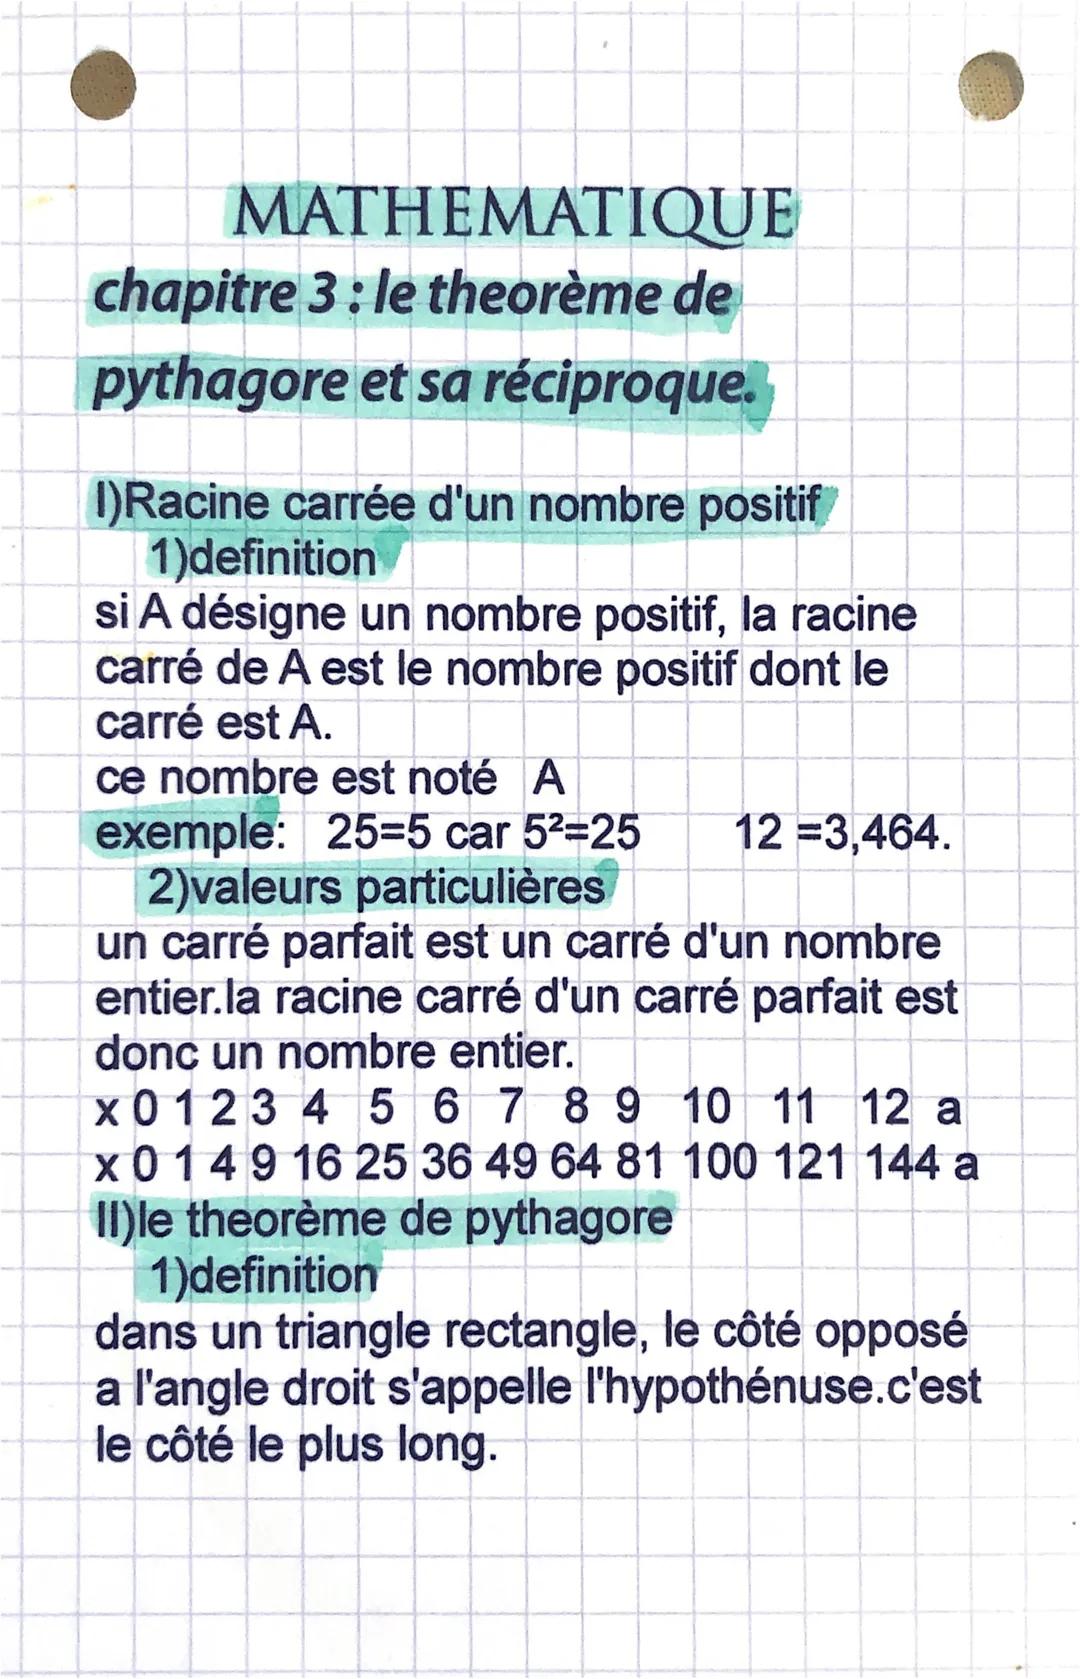 MATHEMATIQUE
chapitre 3: le theorème de
pythagore et sa réciproque.
I)Racine carrée d'un nombre positif
1)definition
si A désigne un nombre 